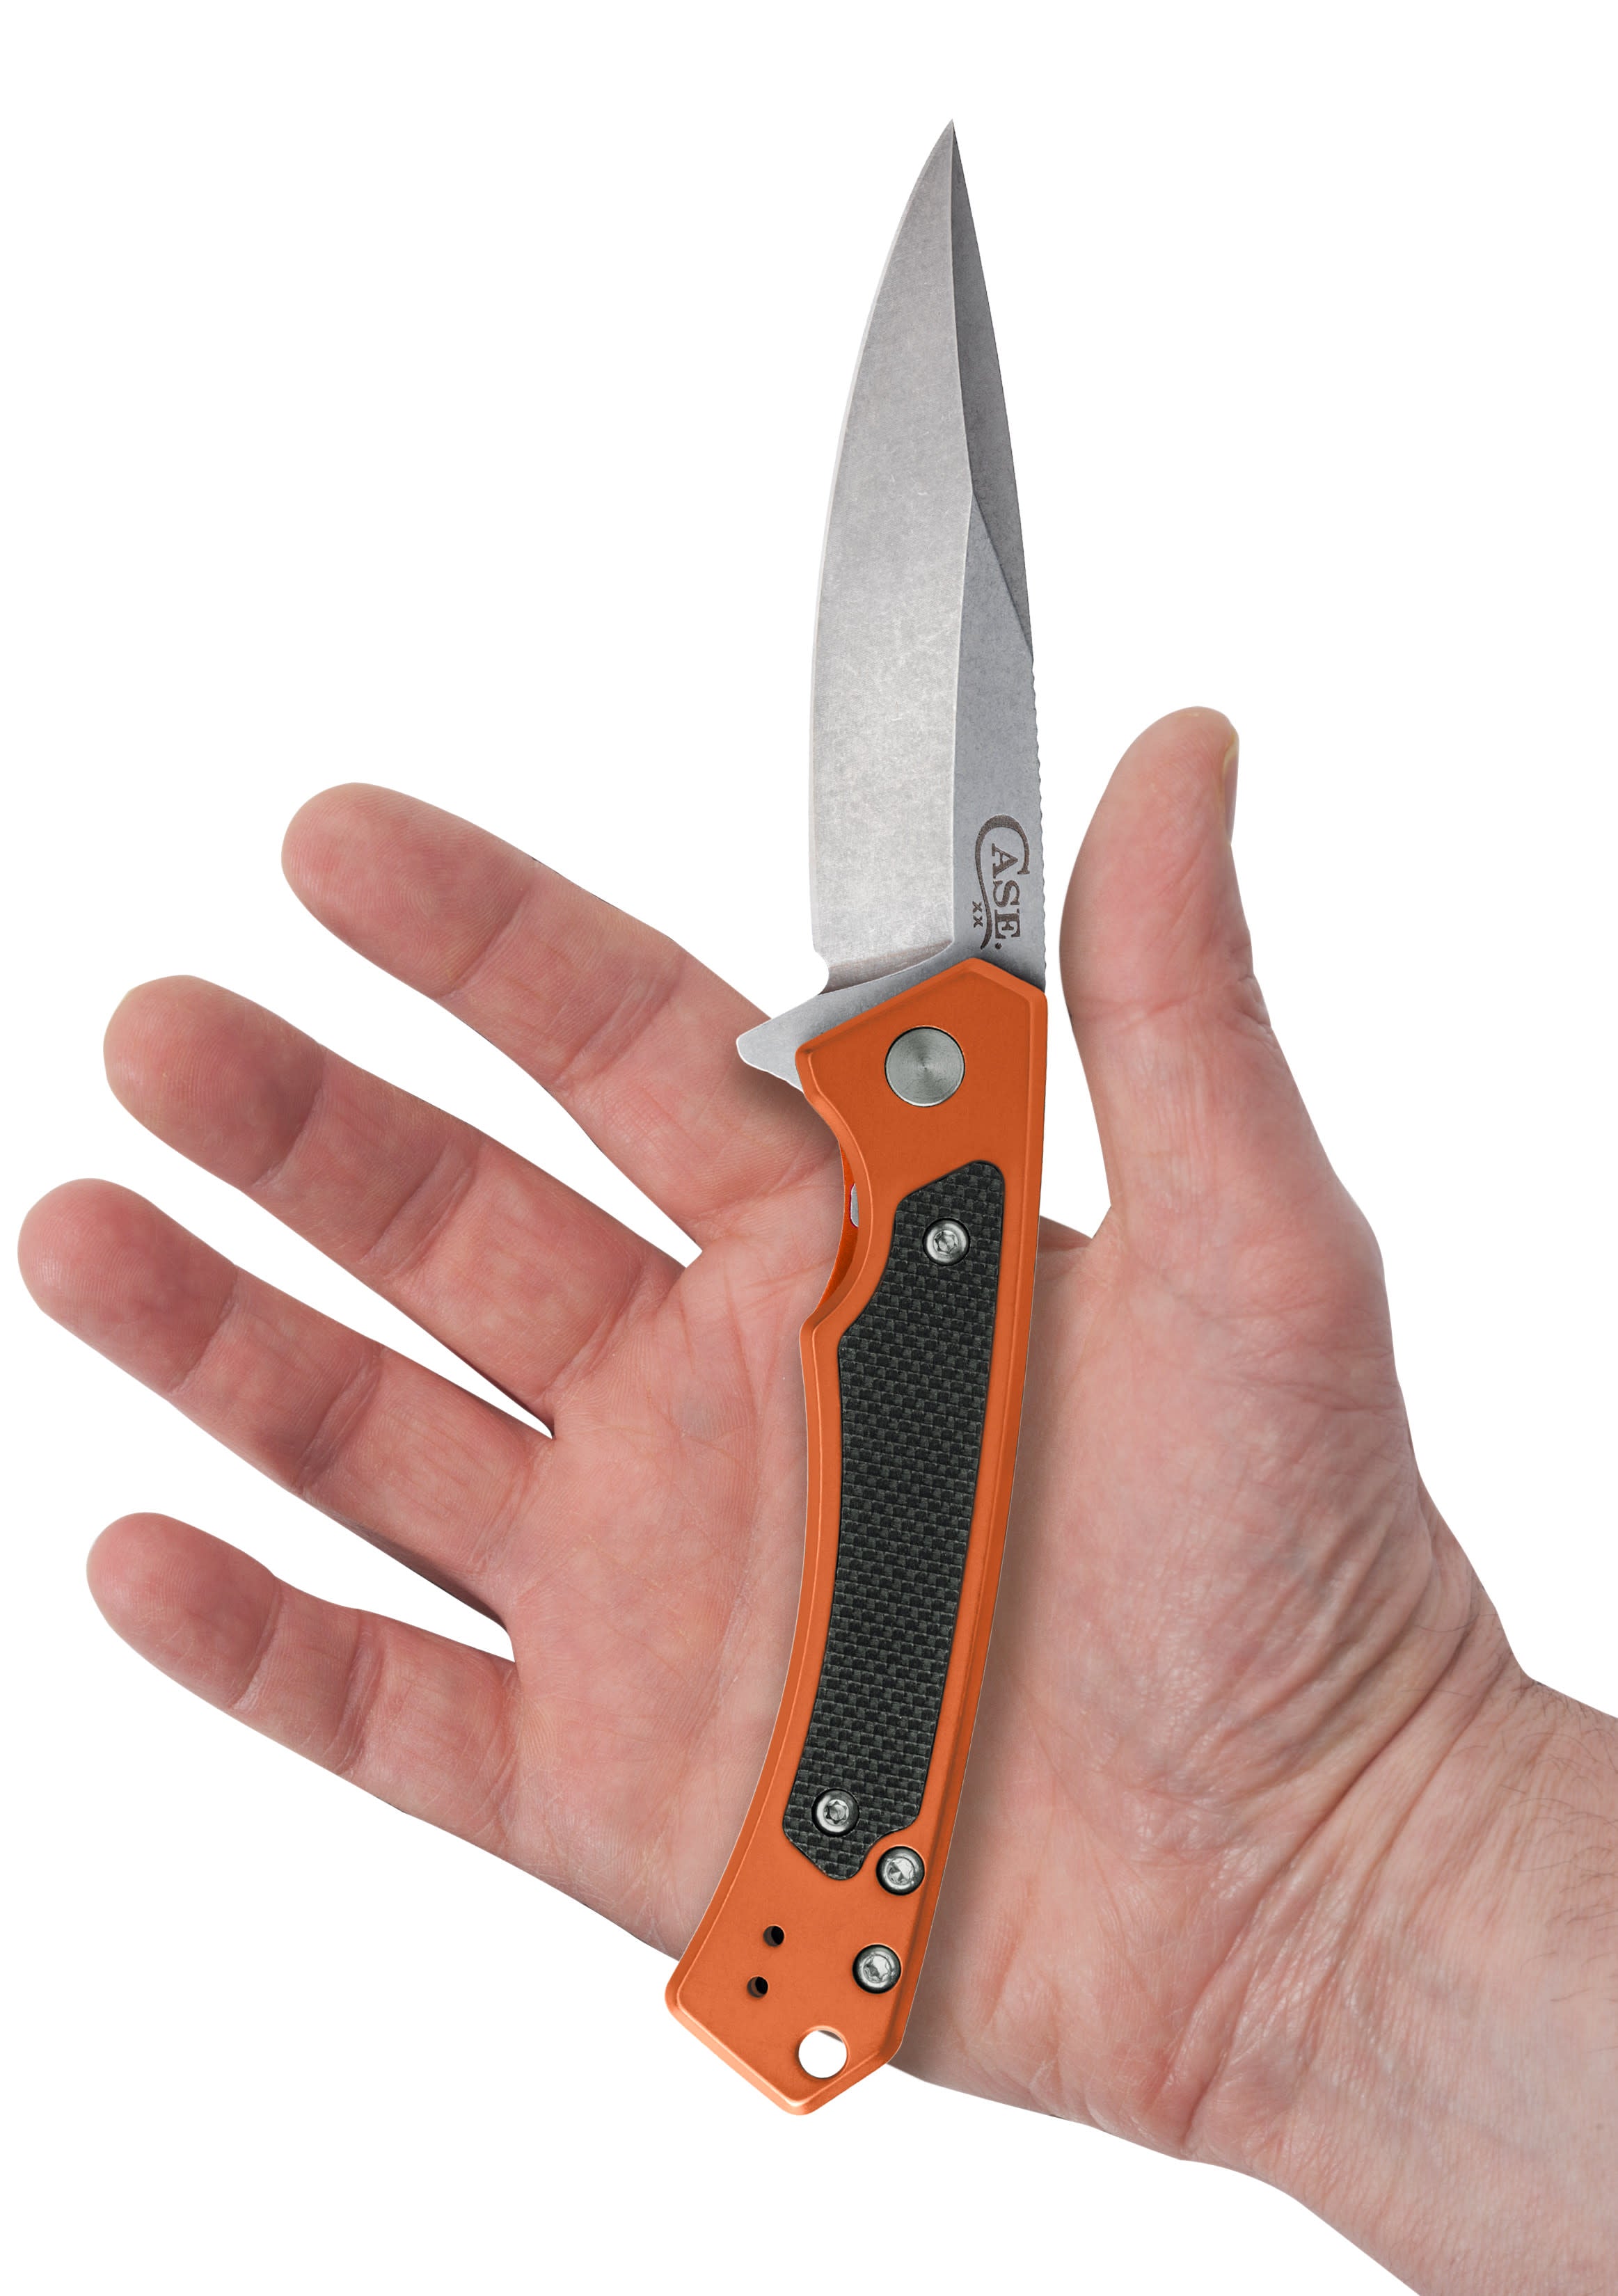 Orange Anodized Aluminum Marilla® Knife Open in Hand